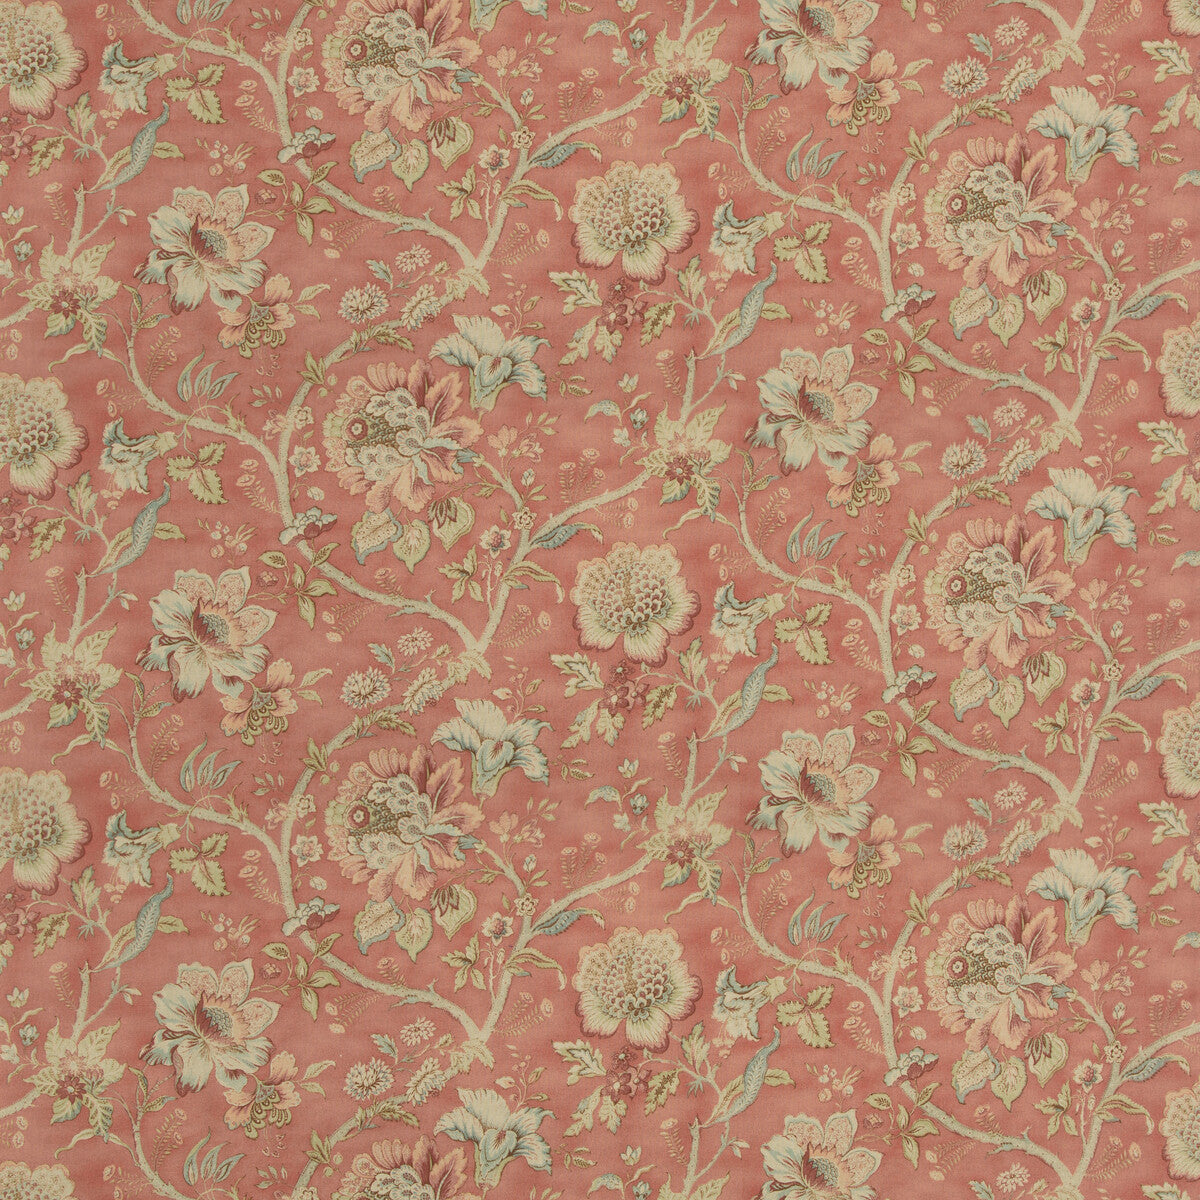 Avonlea fabric in garnet color - pattern AVONLEA.715.0 - by Kravet Basics